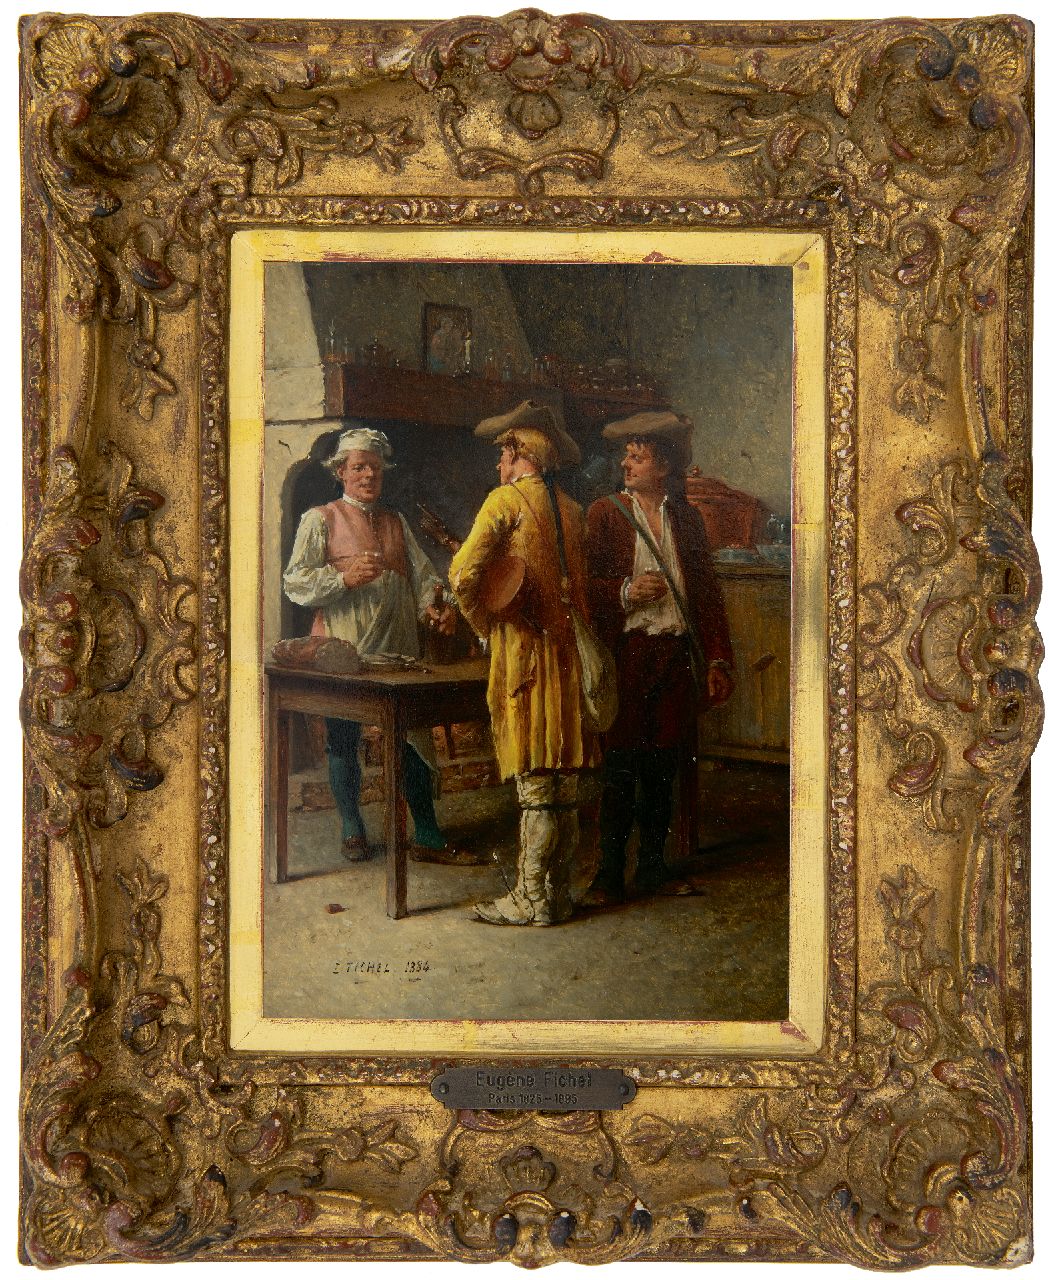 Fichel B.E.  | Benjamin 'Eugène' Fichel | Schilderijen te koop aangeboden | Pauze in de herberg, olieverf op paneel 22,0 x 15,7 cm, gesigneerd linksonder en gedateerd 1884